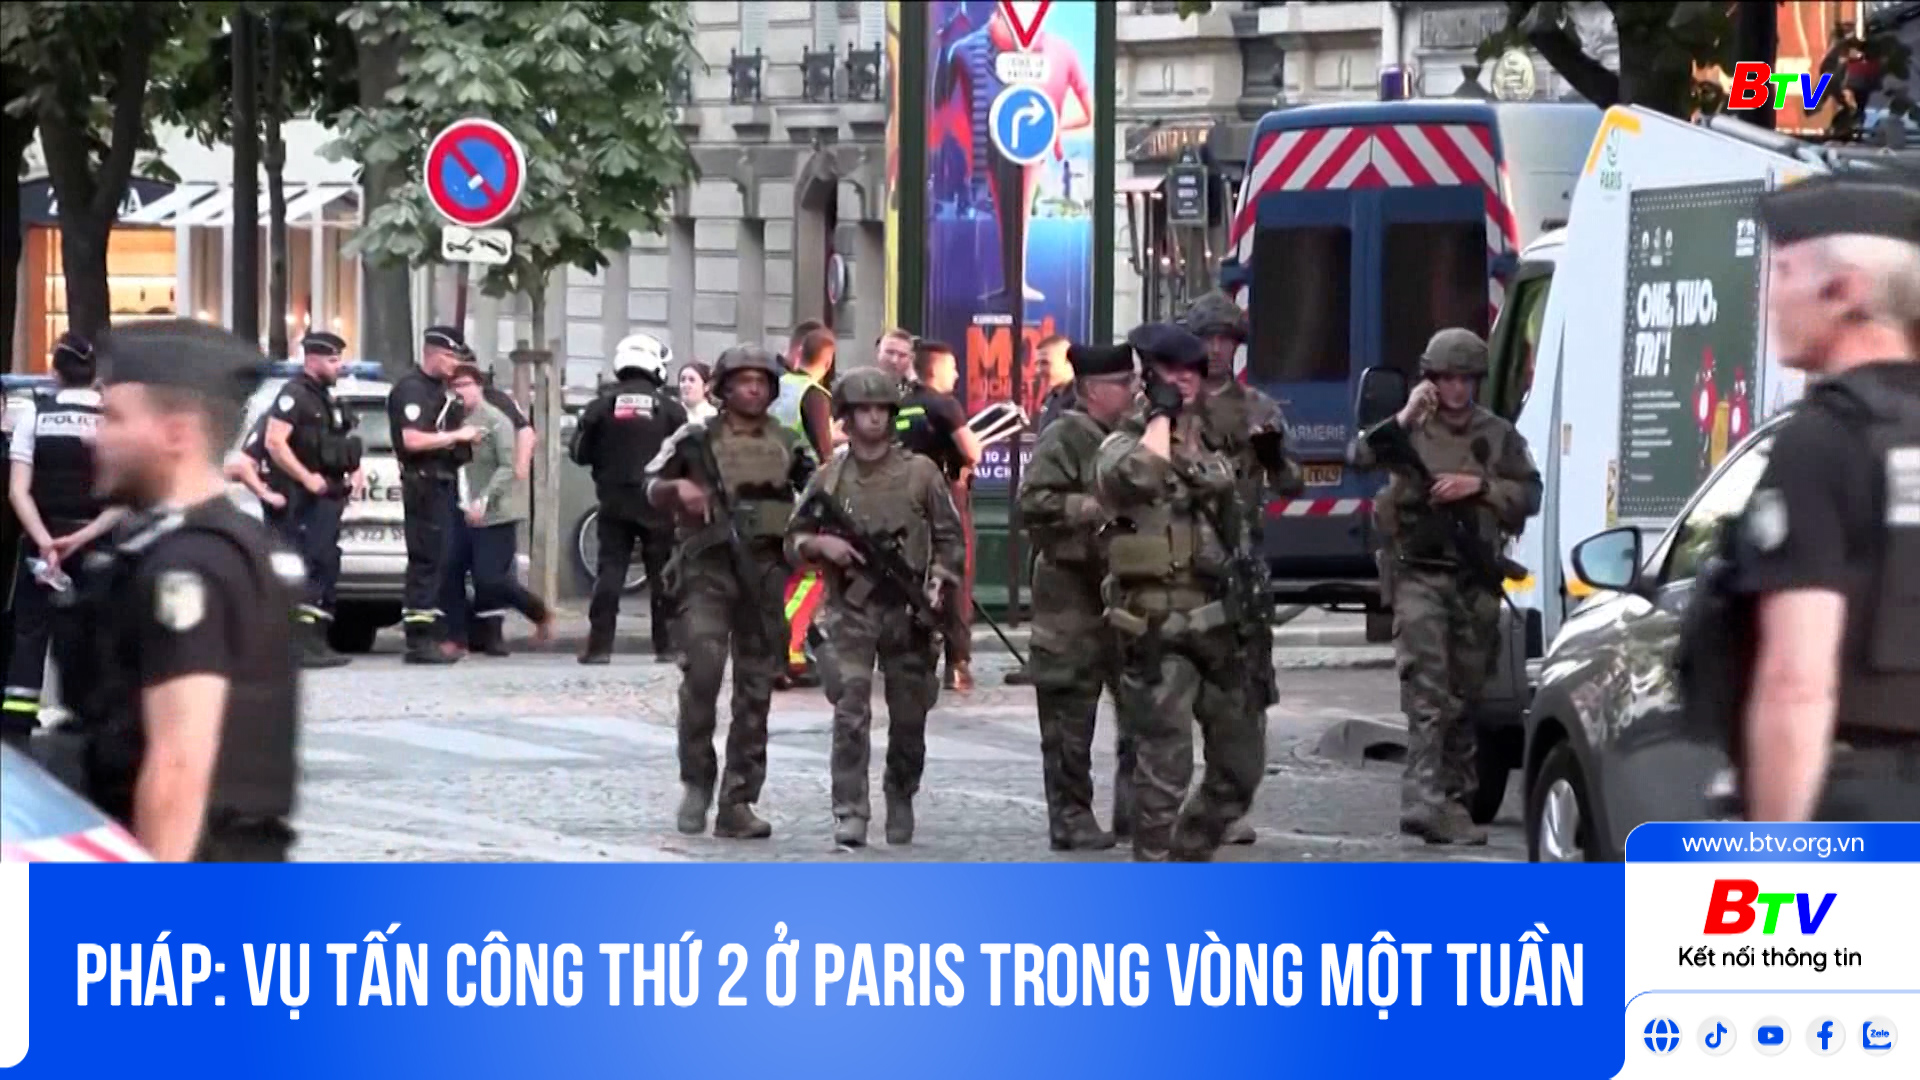 Pháp: vụ tấn công thứ 2 ở Paris trong vòng một tuần